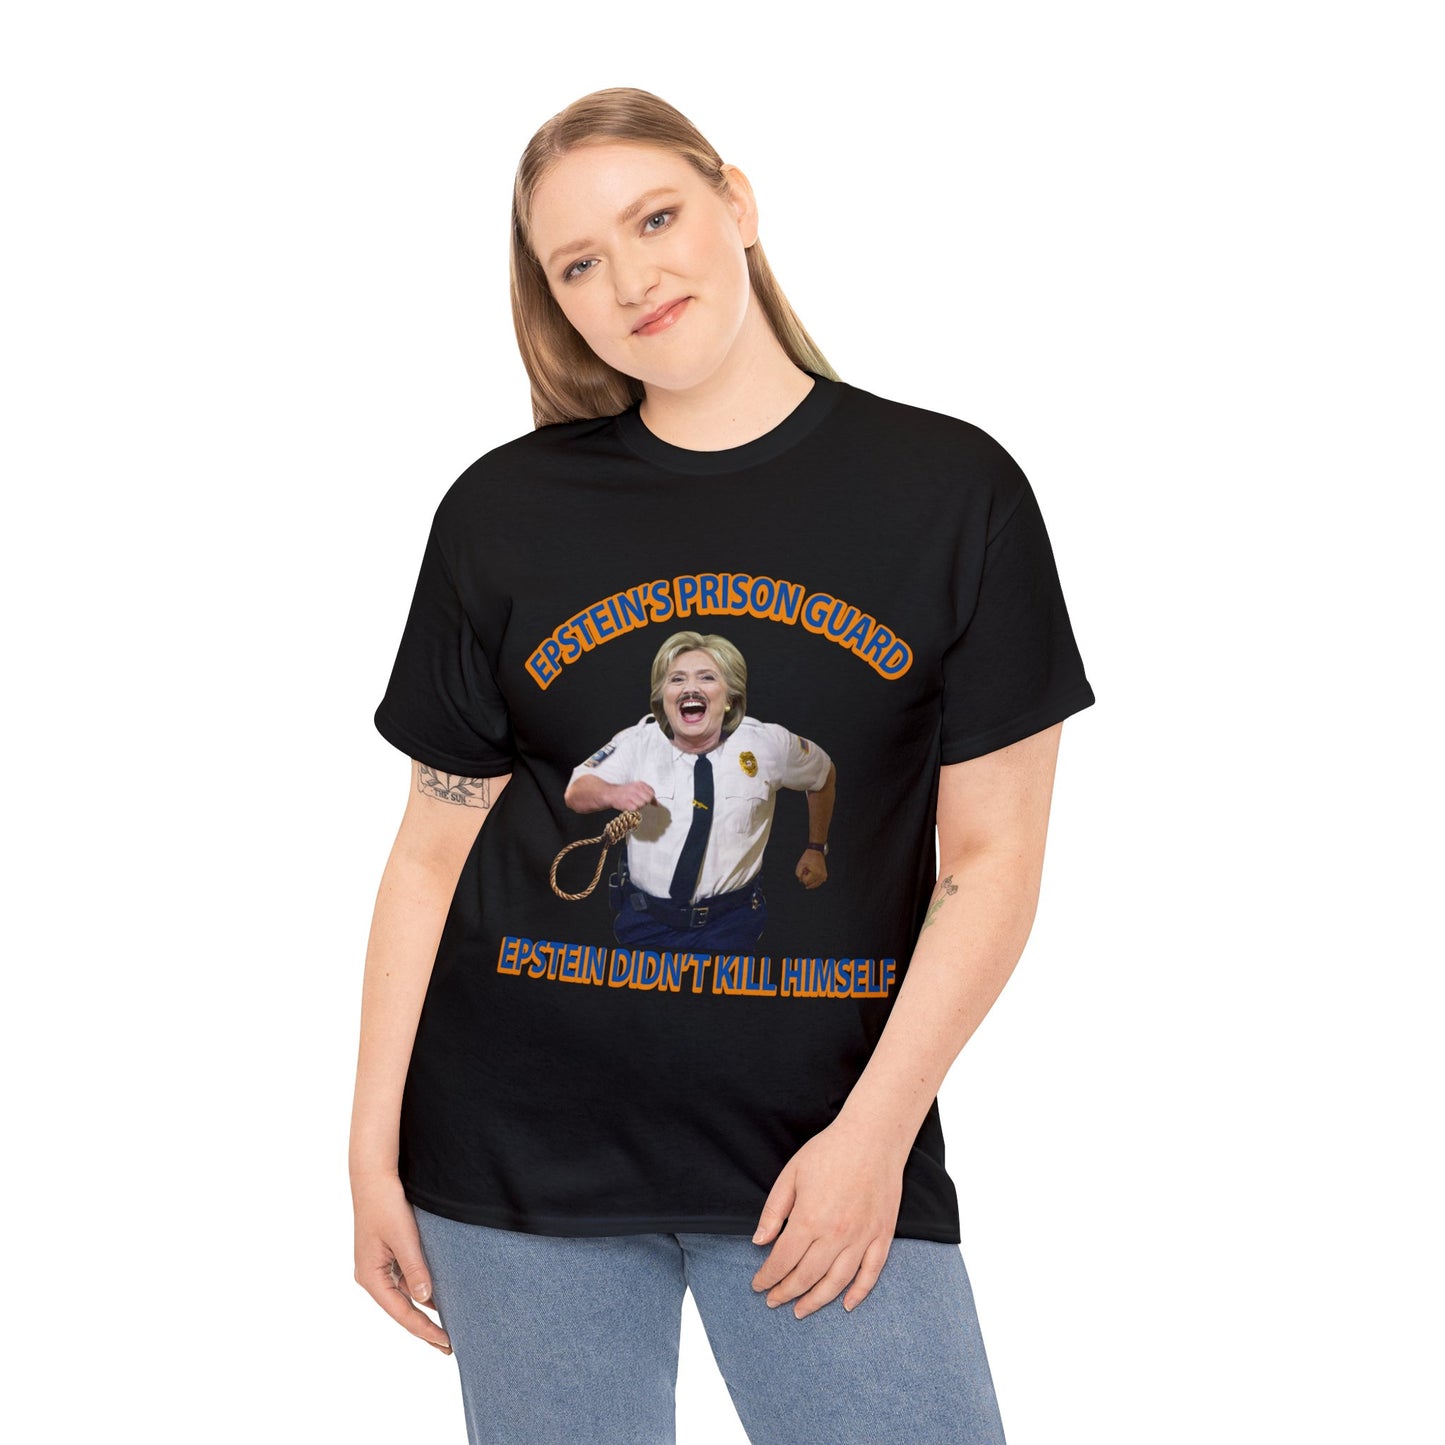 Funny Hillary Clinton Shirt